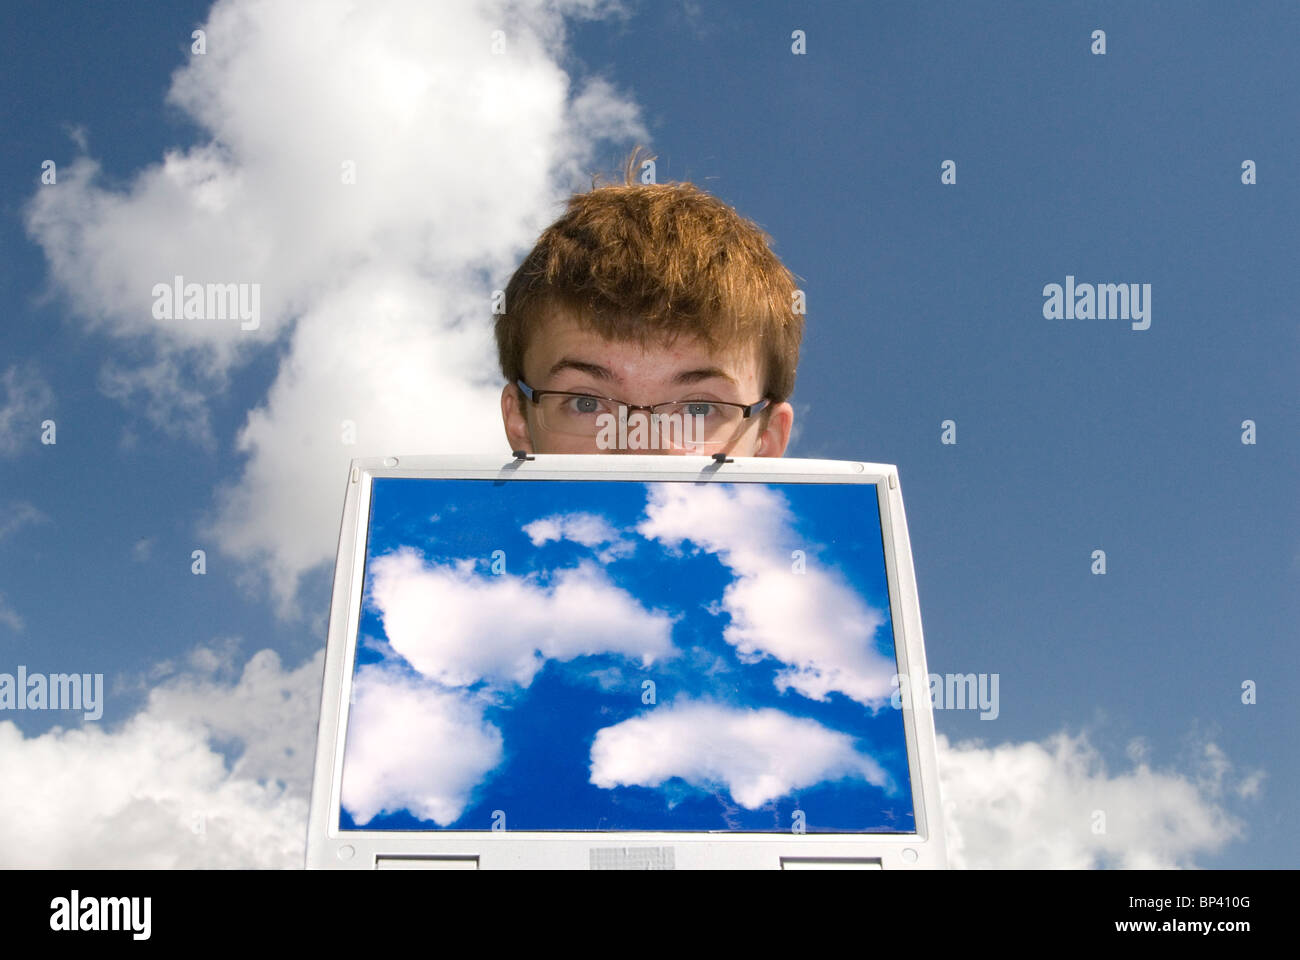 Adolescente con ordenador portátil que contiene imágenes de nubes que representa el cloud computing con nubes en segundo plano. Foto de stock